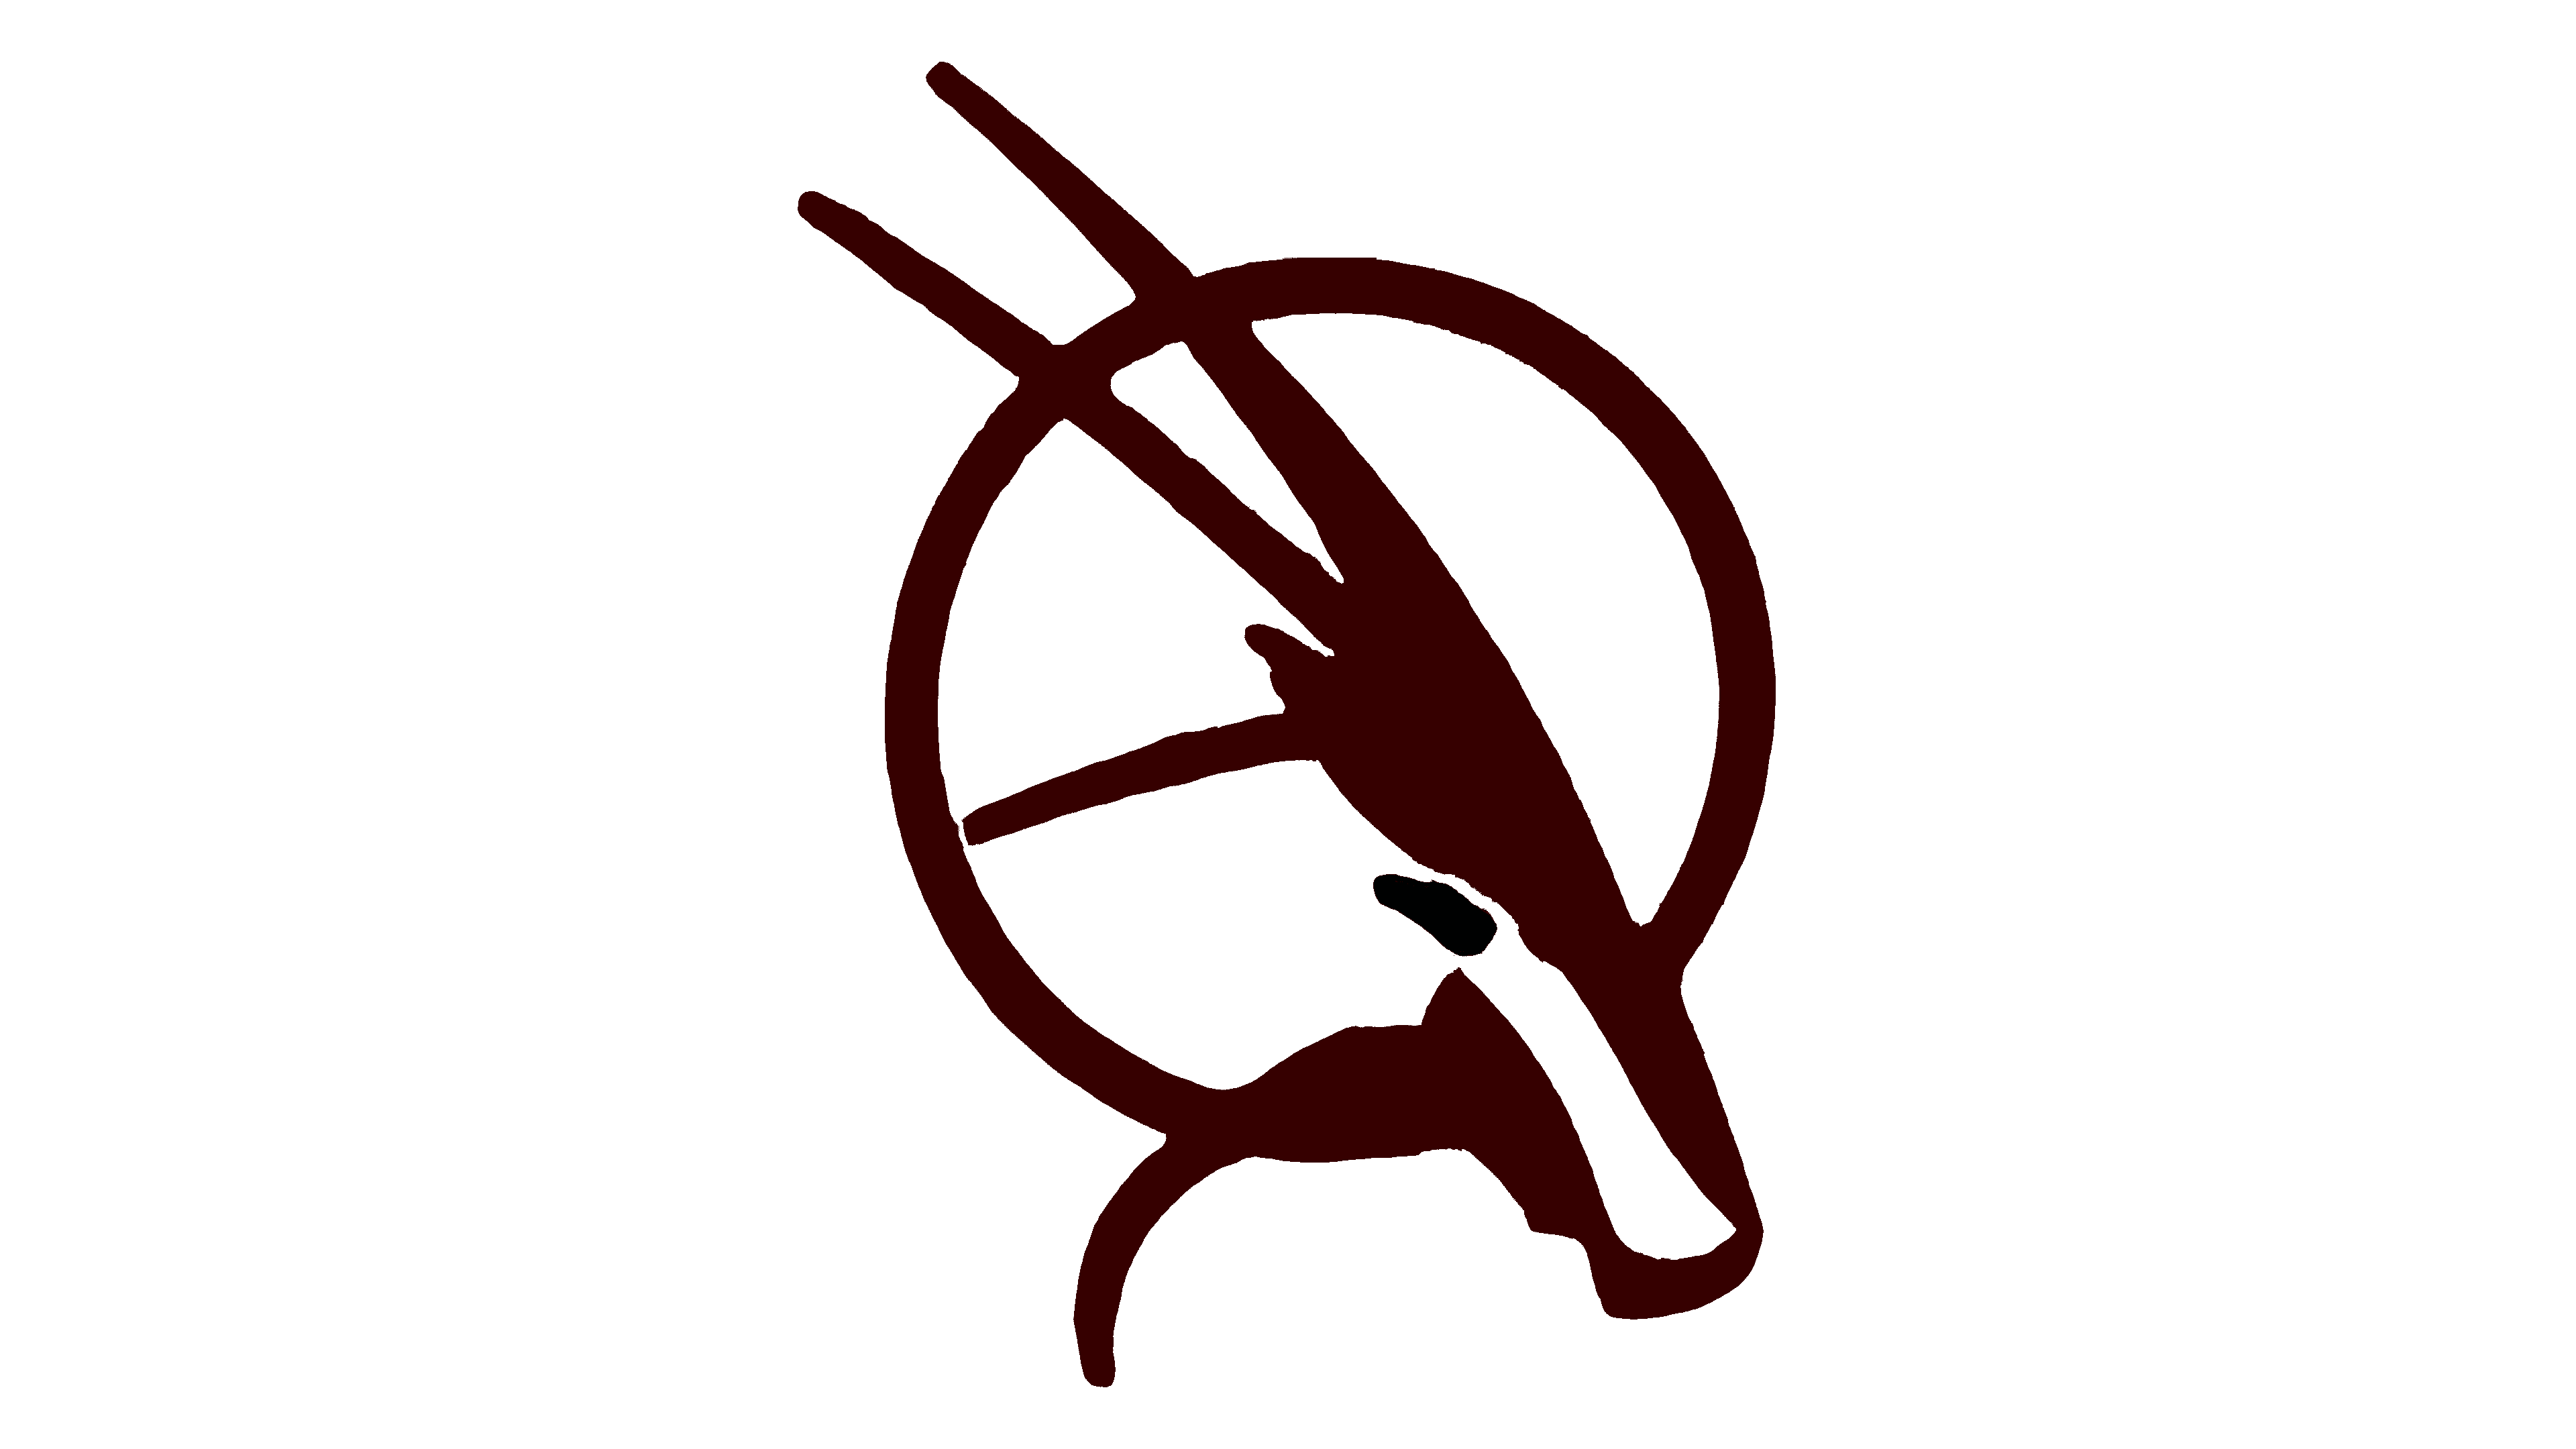 qatar airways logosu hayvan